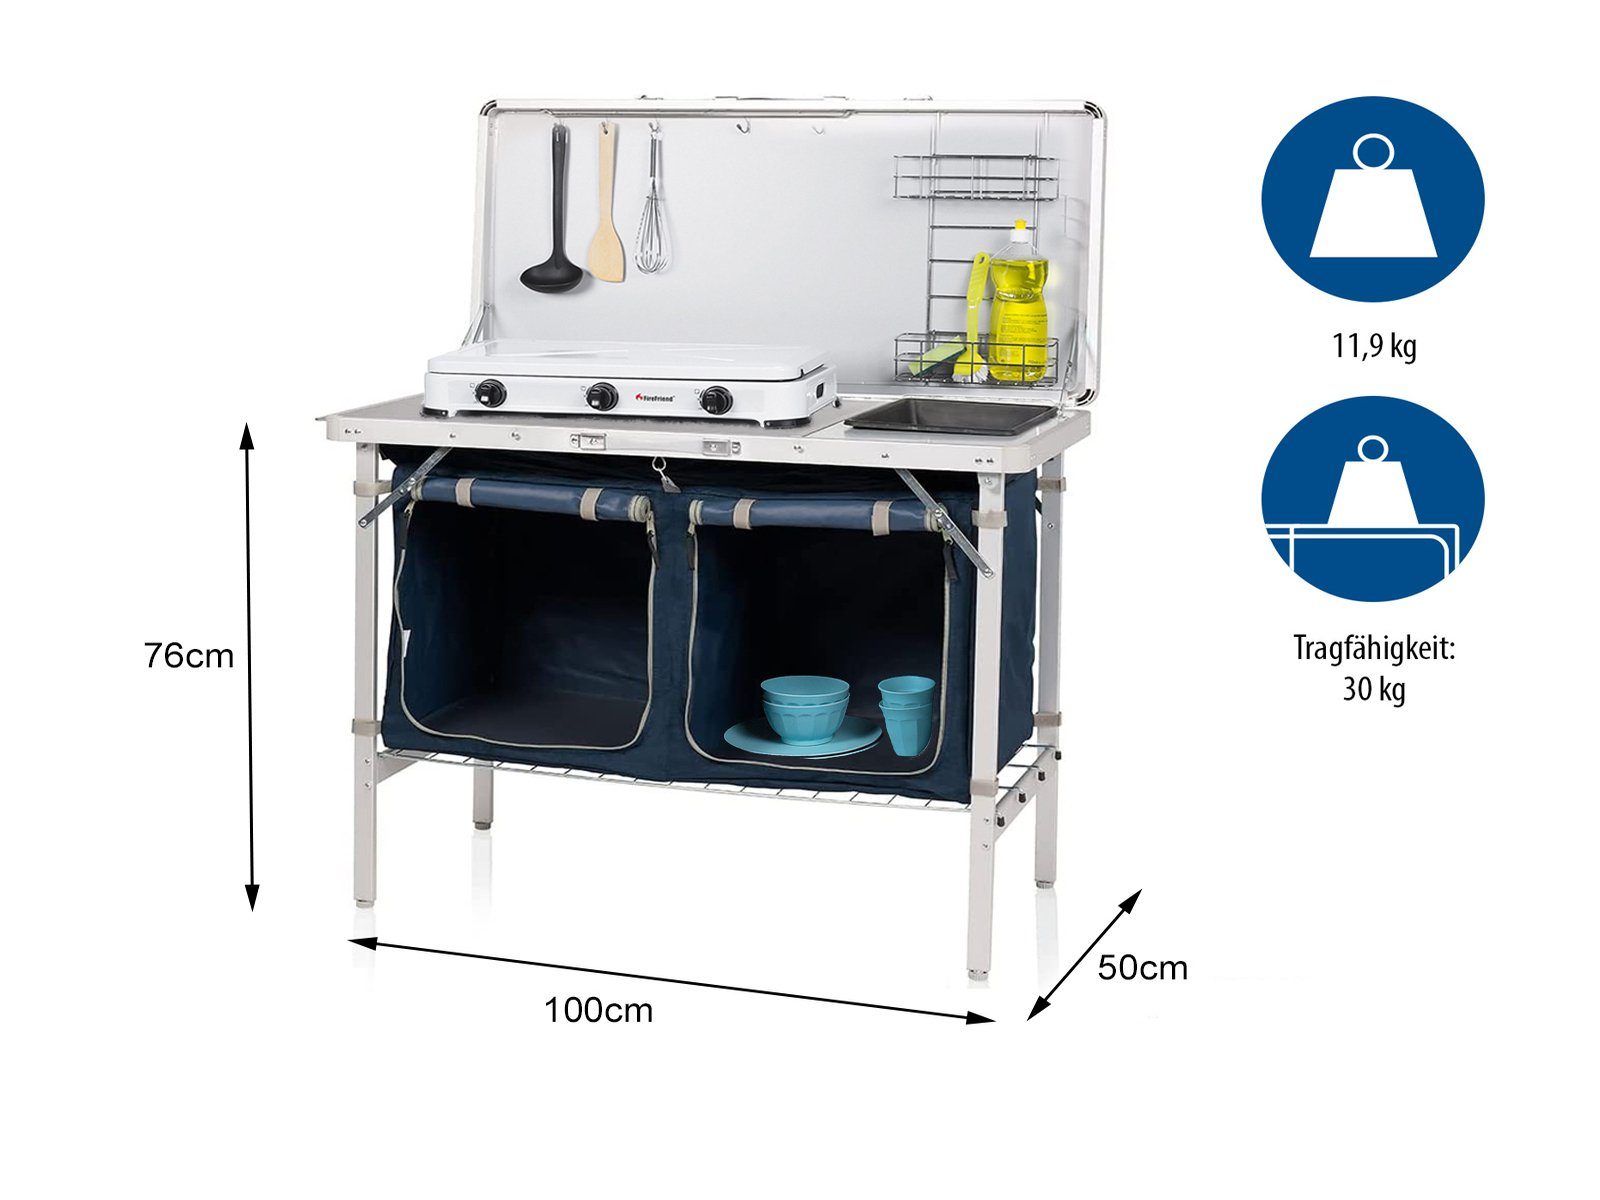 [Originalprodukt! Jetzt supergünstig auf Sendung!] Campart Spülenschrank mobile Küchenbox mit Camper faltbar Küche Spüle Küchenschrank Outdoor